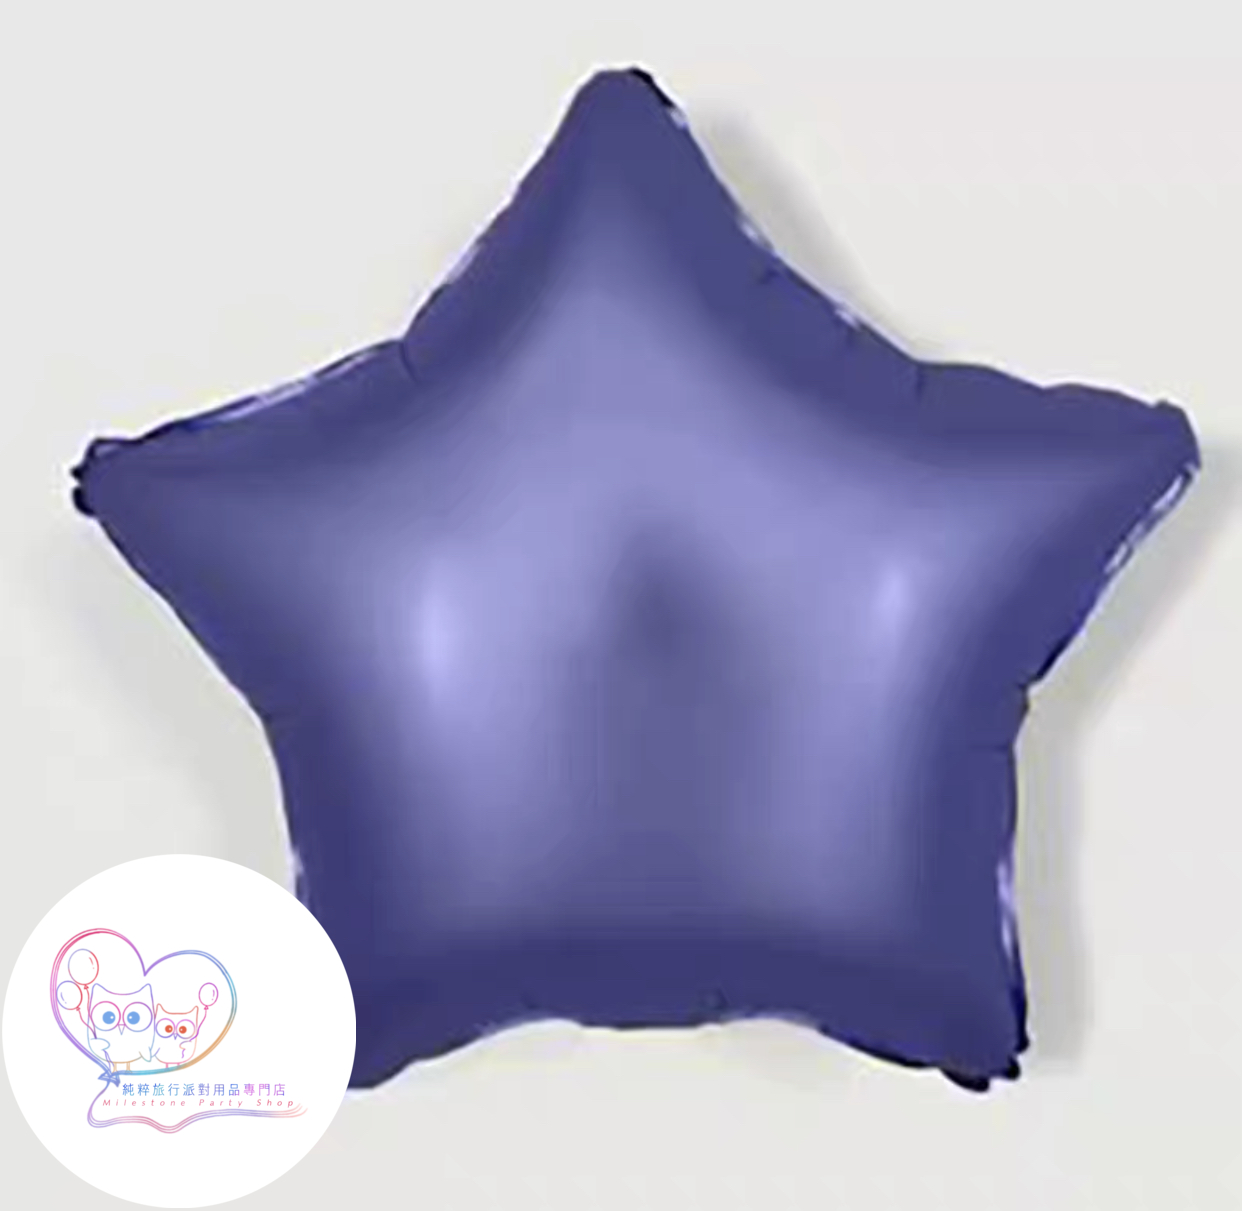 10吋星星鋁膜氣球 (磨砂淺紫色) 10SM8